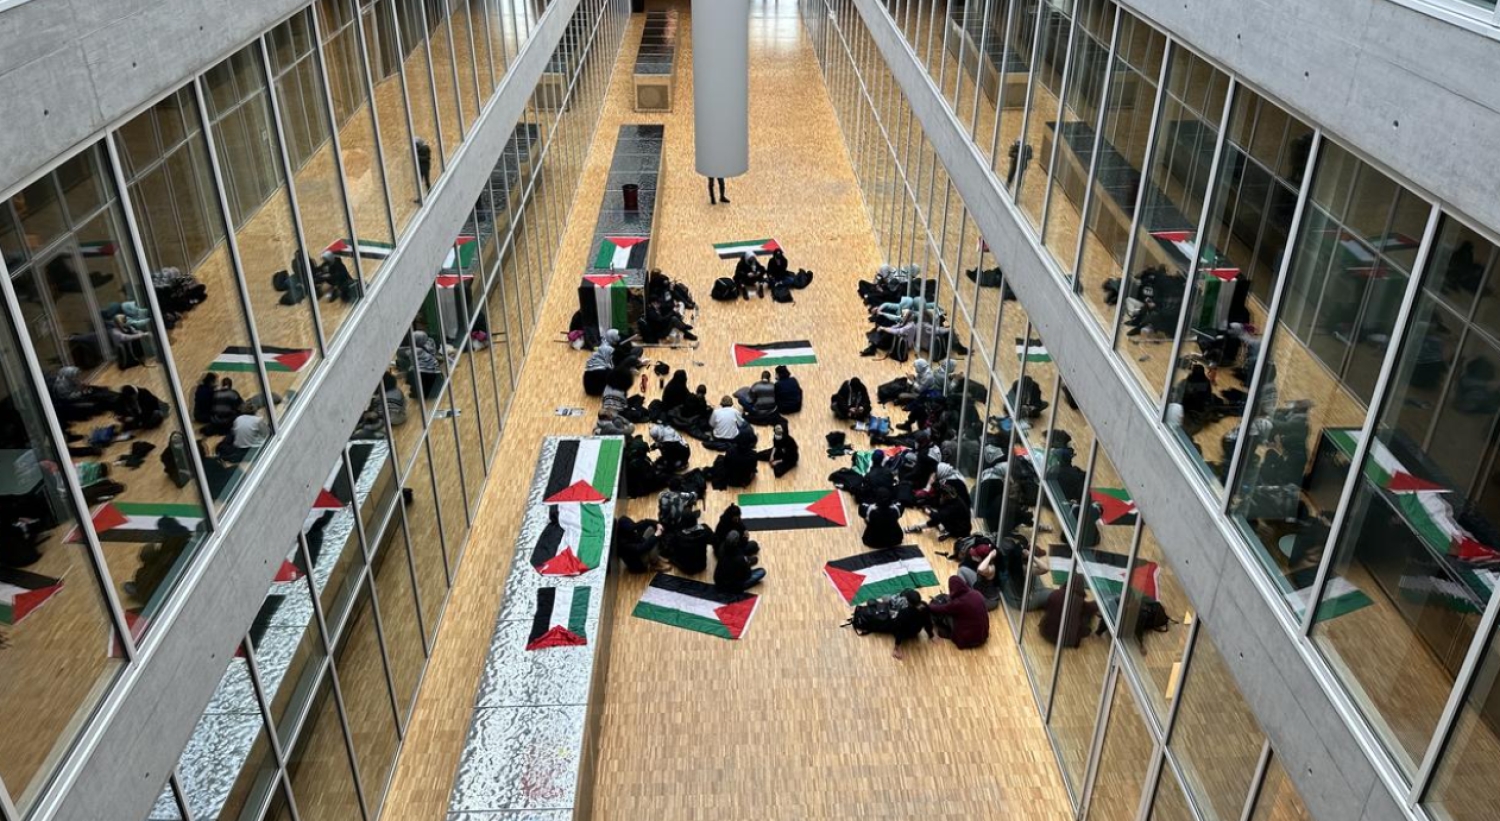 طلاب مؤيدين للفلسطينيين يحتلون قاعة في ردهة مبنى تابع لجامعة لوزان السويسرية (موقع راديو وتلفزيون سويسرا) 